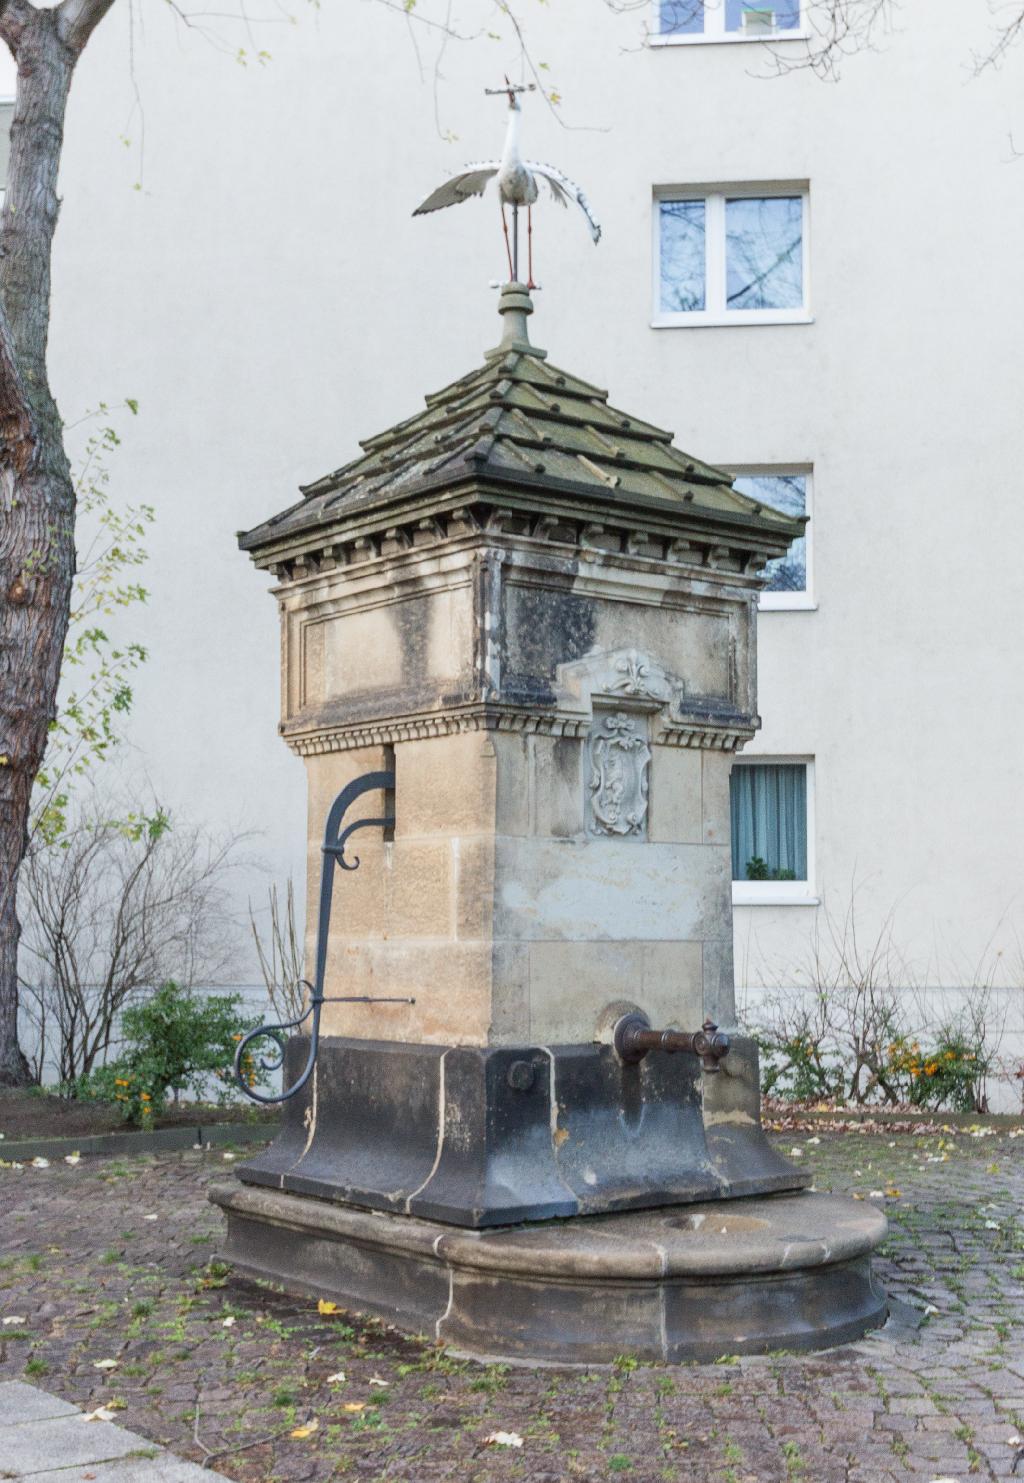 Queckbrunnen